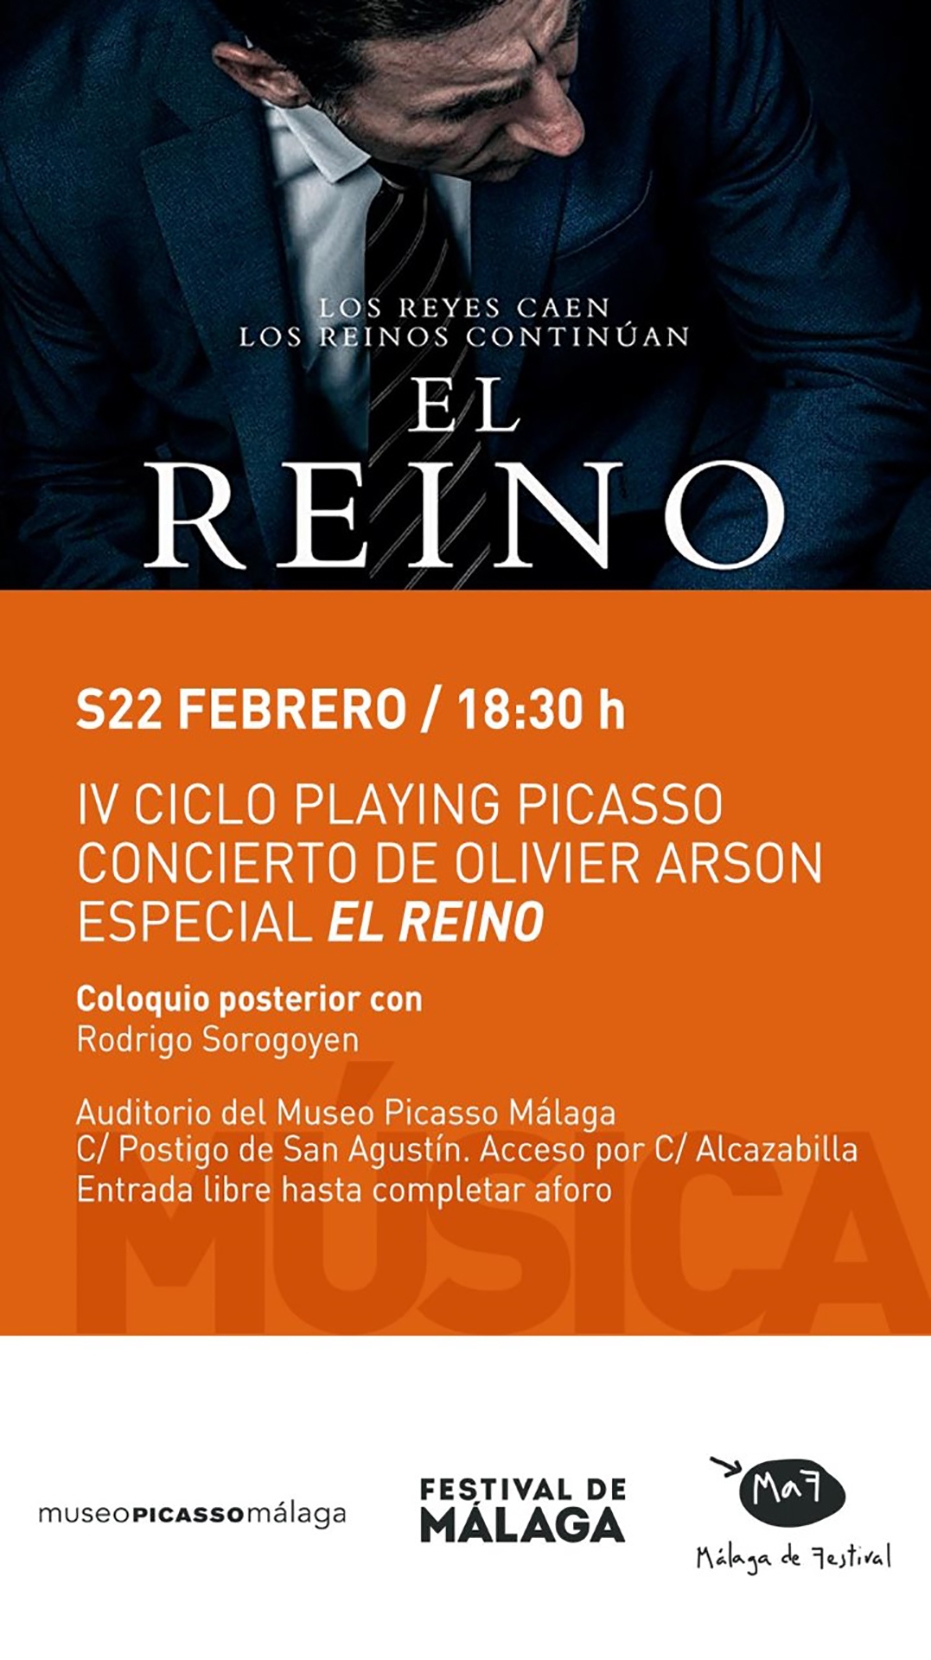 IV Ciclo Playing Picasso: concierto electrónico de Olivier Arson especial El Reino. Coloquio posterior con Rodrigo Sorogoyen